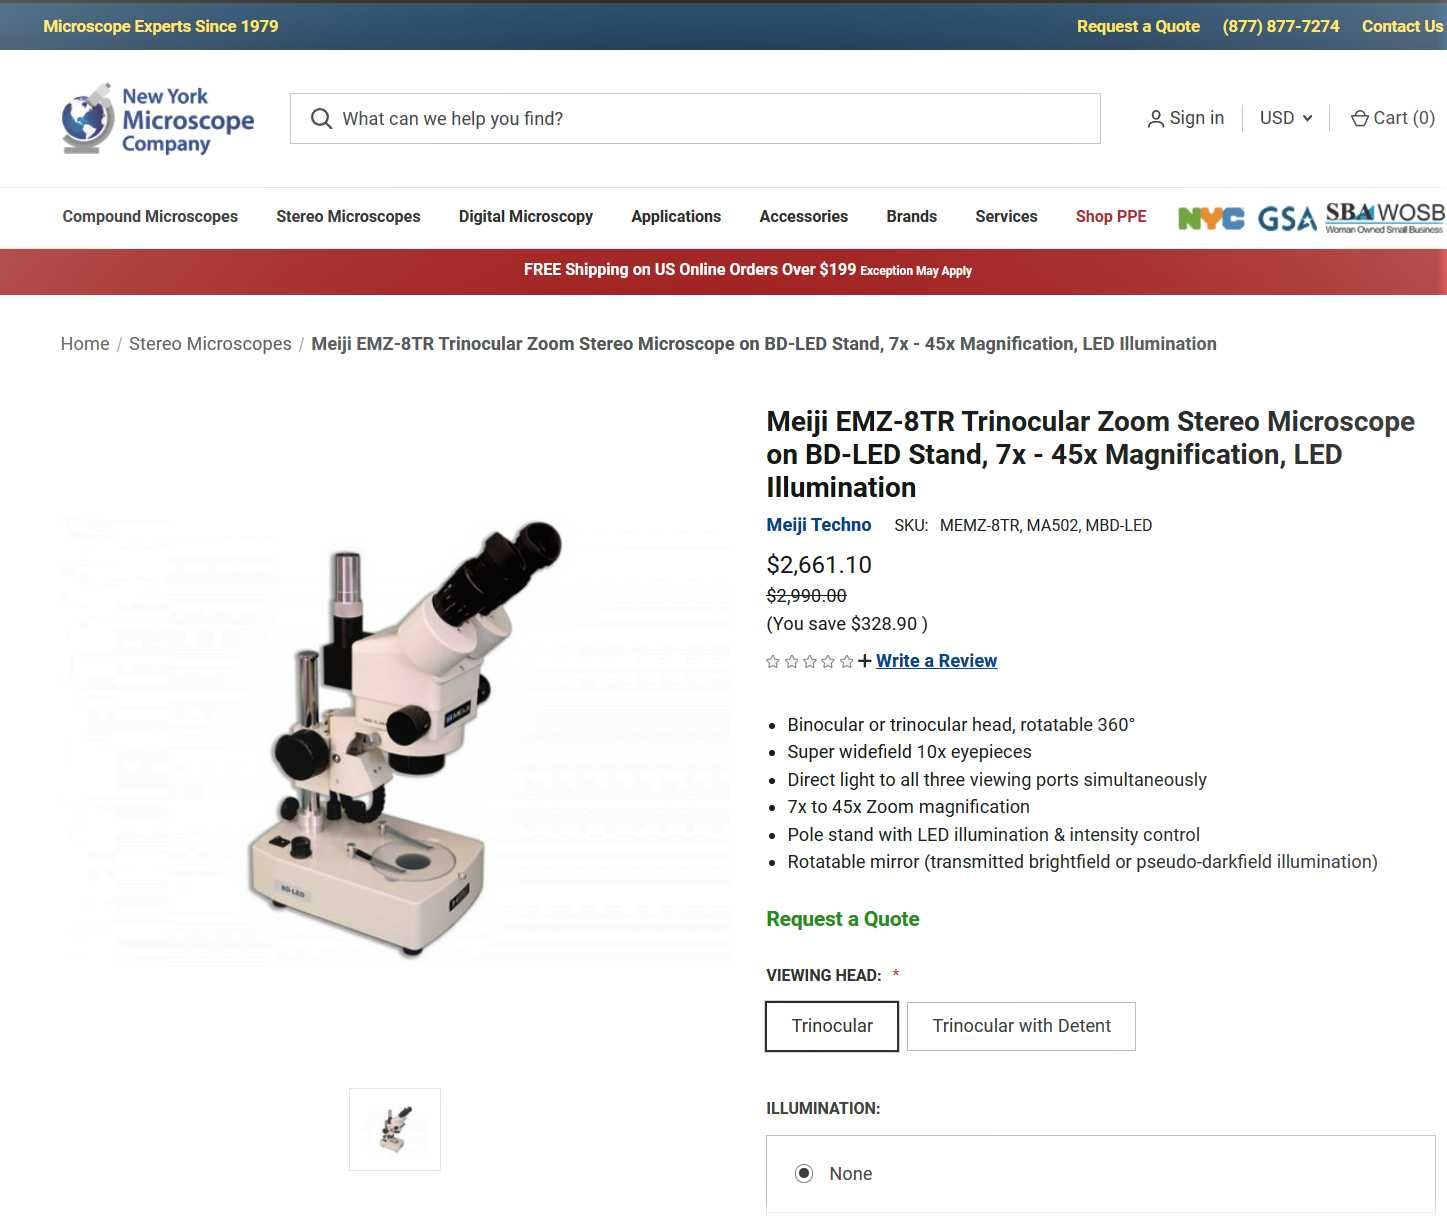 Meiji EMZ-8TR Trinocular Zoom Stereo Microscope